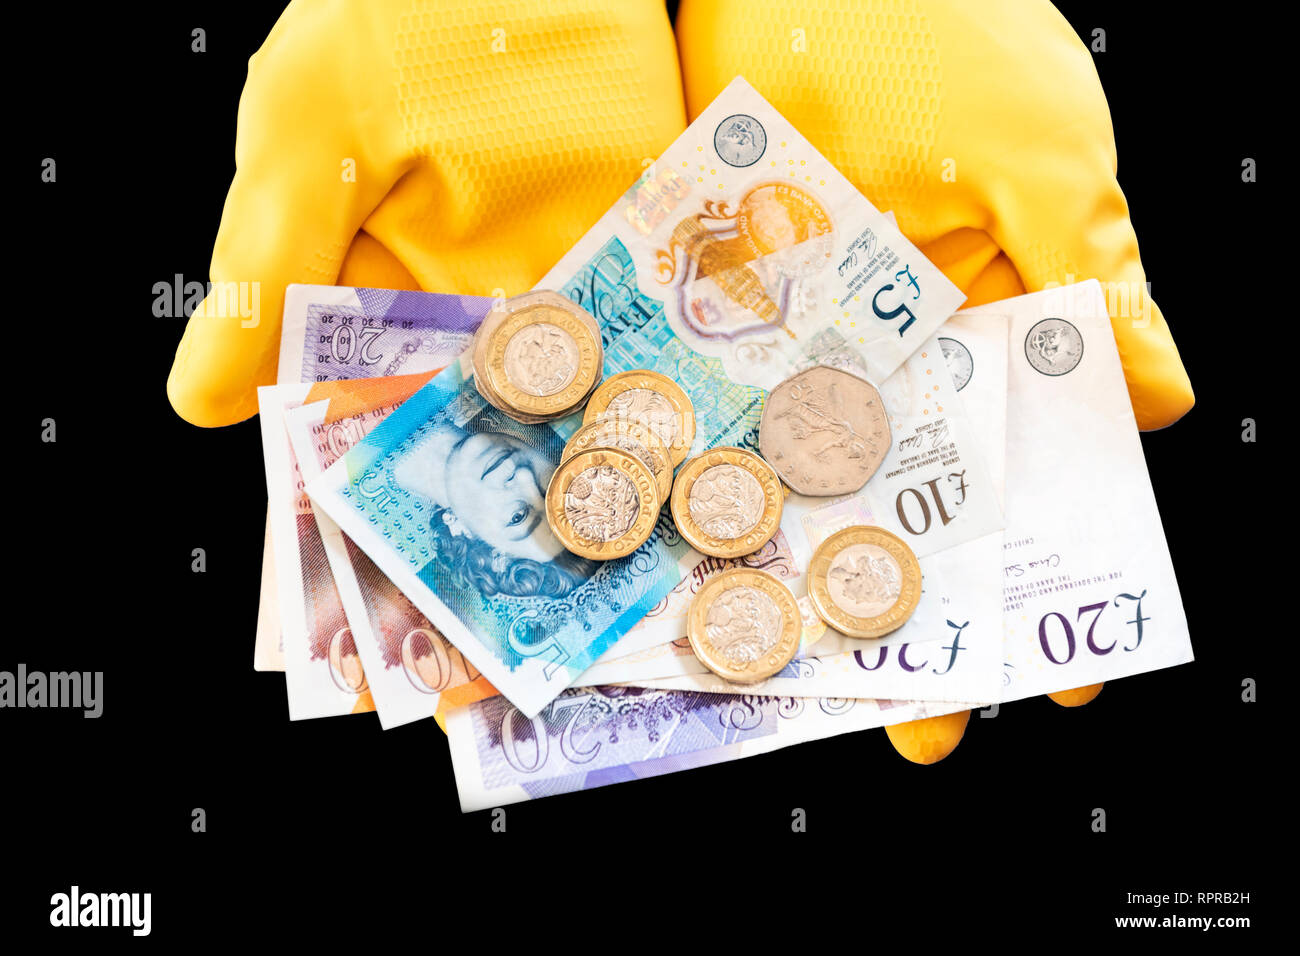 Una coppia di mani giallo da indossare guanti di gomma holding pound notes & monete. Concetto di contanti in mano, economia in nero o a bassa retribuzione. Foto Stock